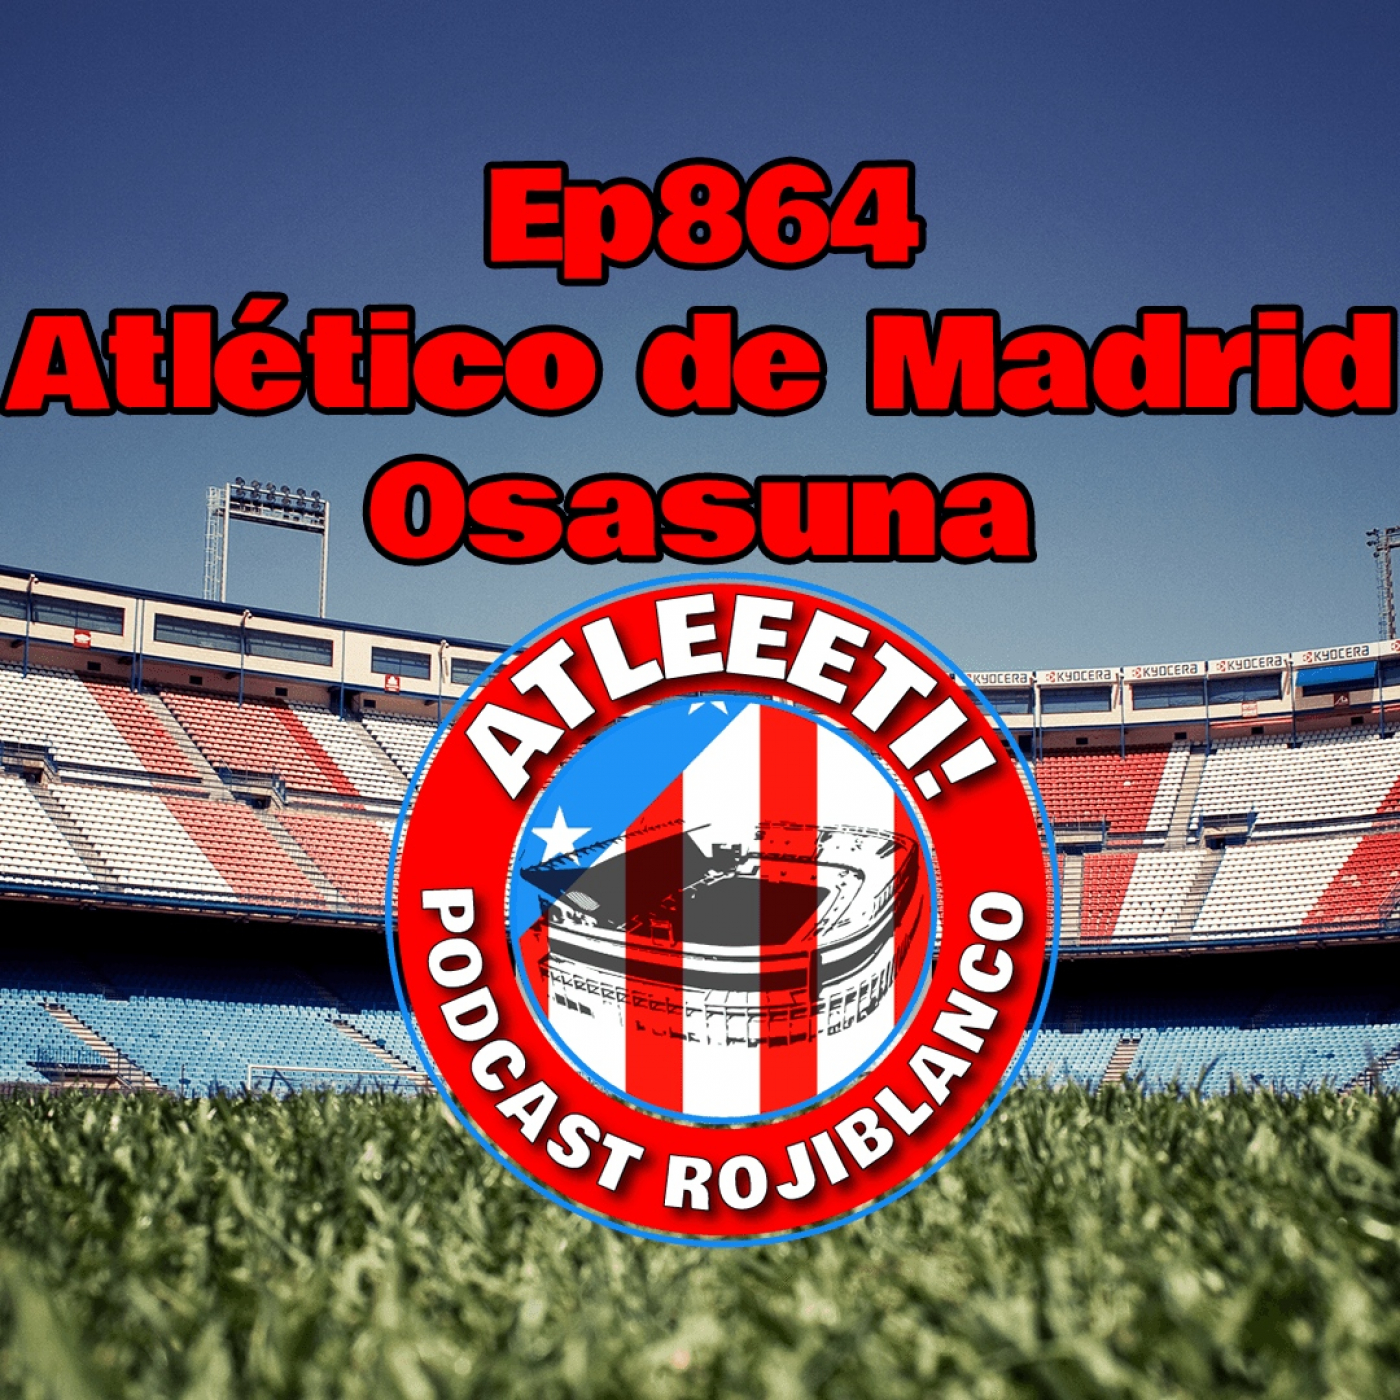 Ep864: Atlético de Madrid 3-0 Osasuna